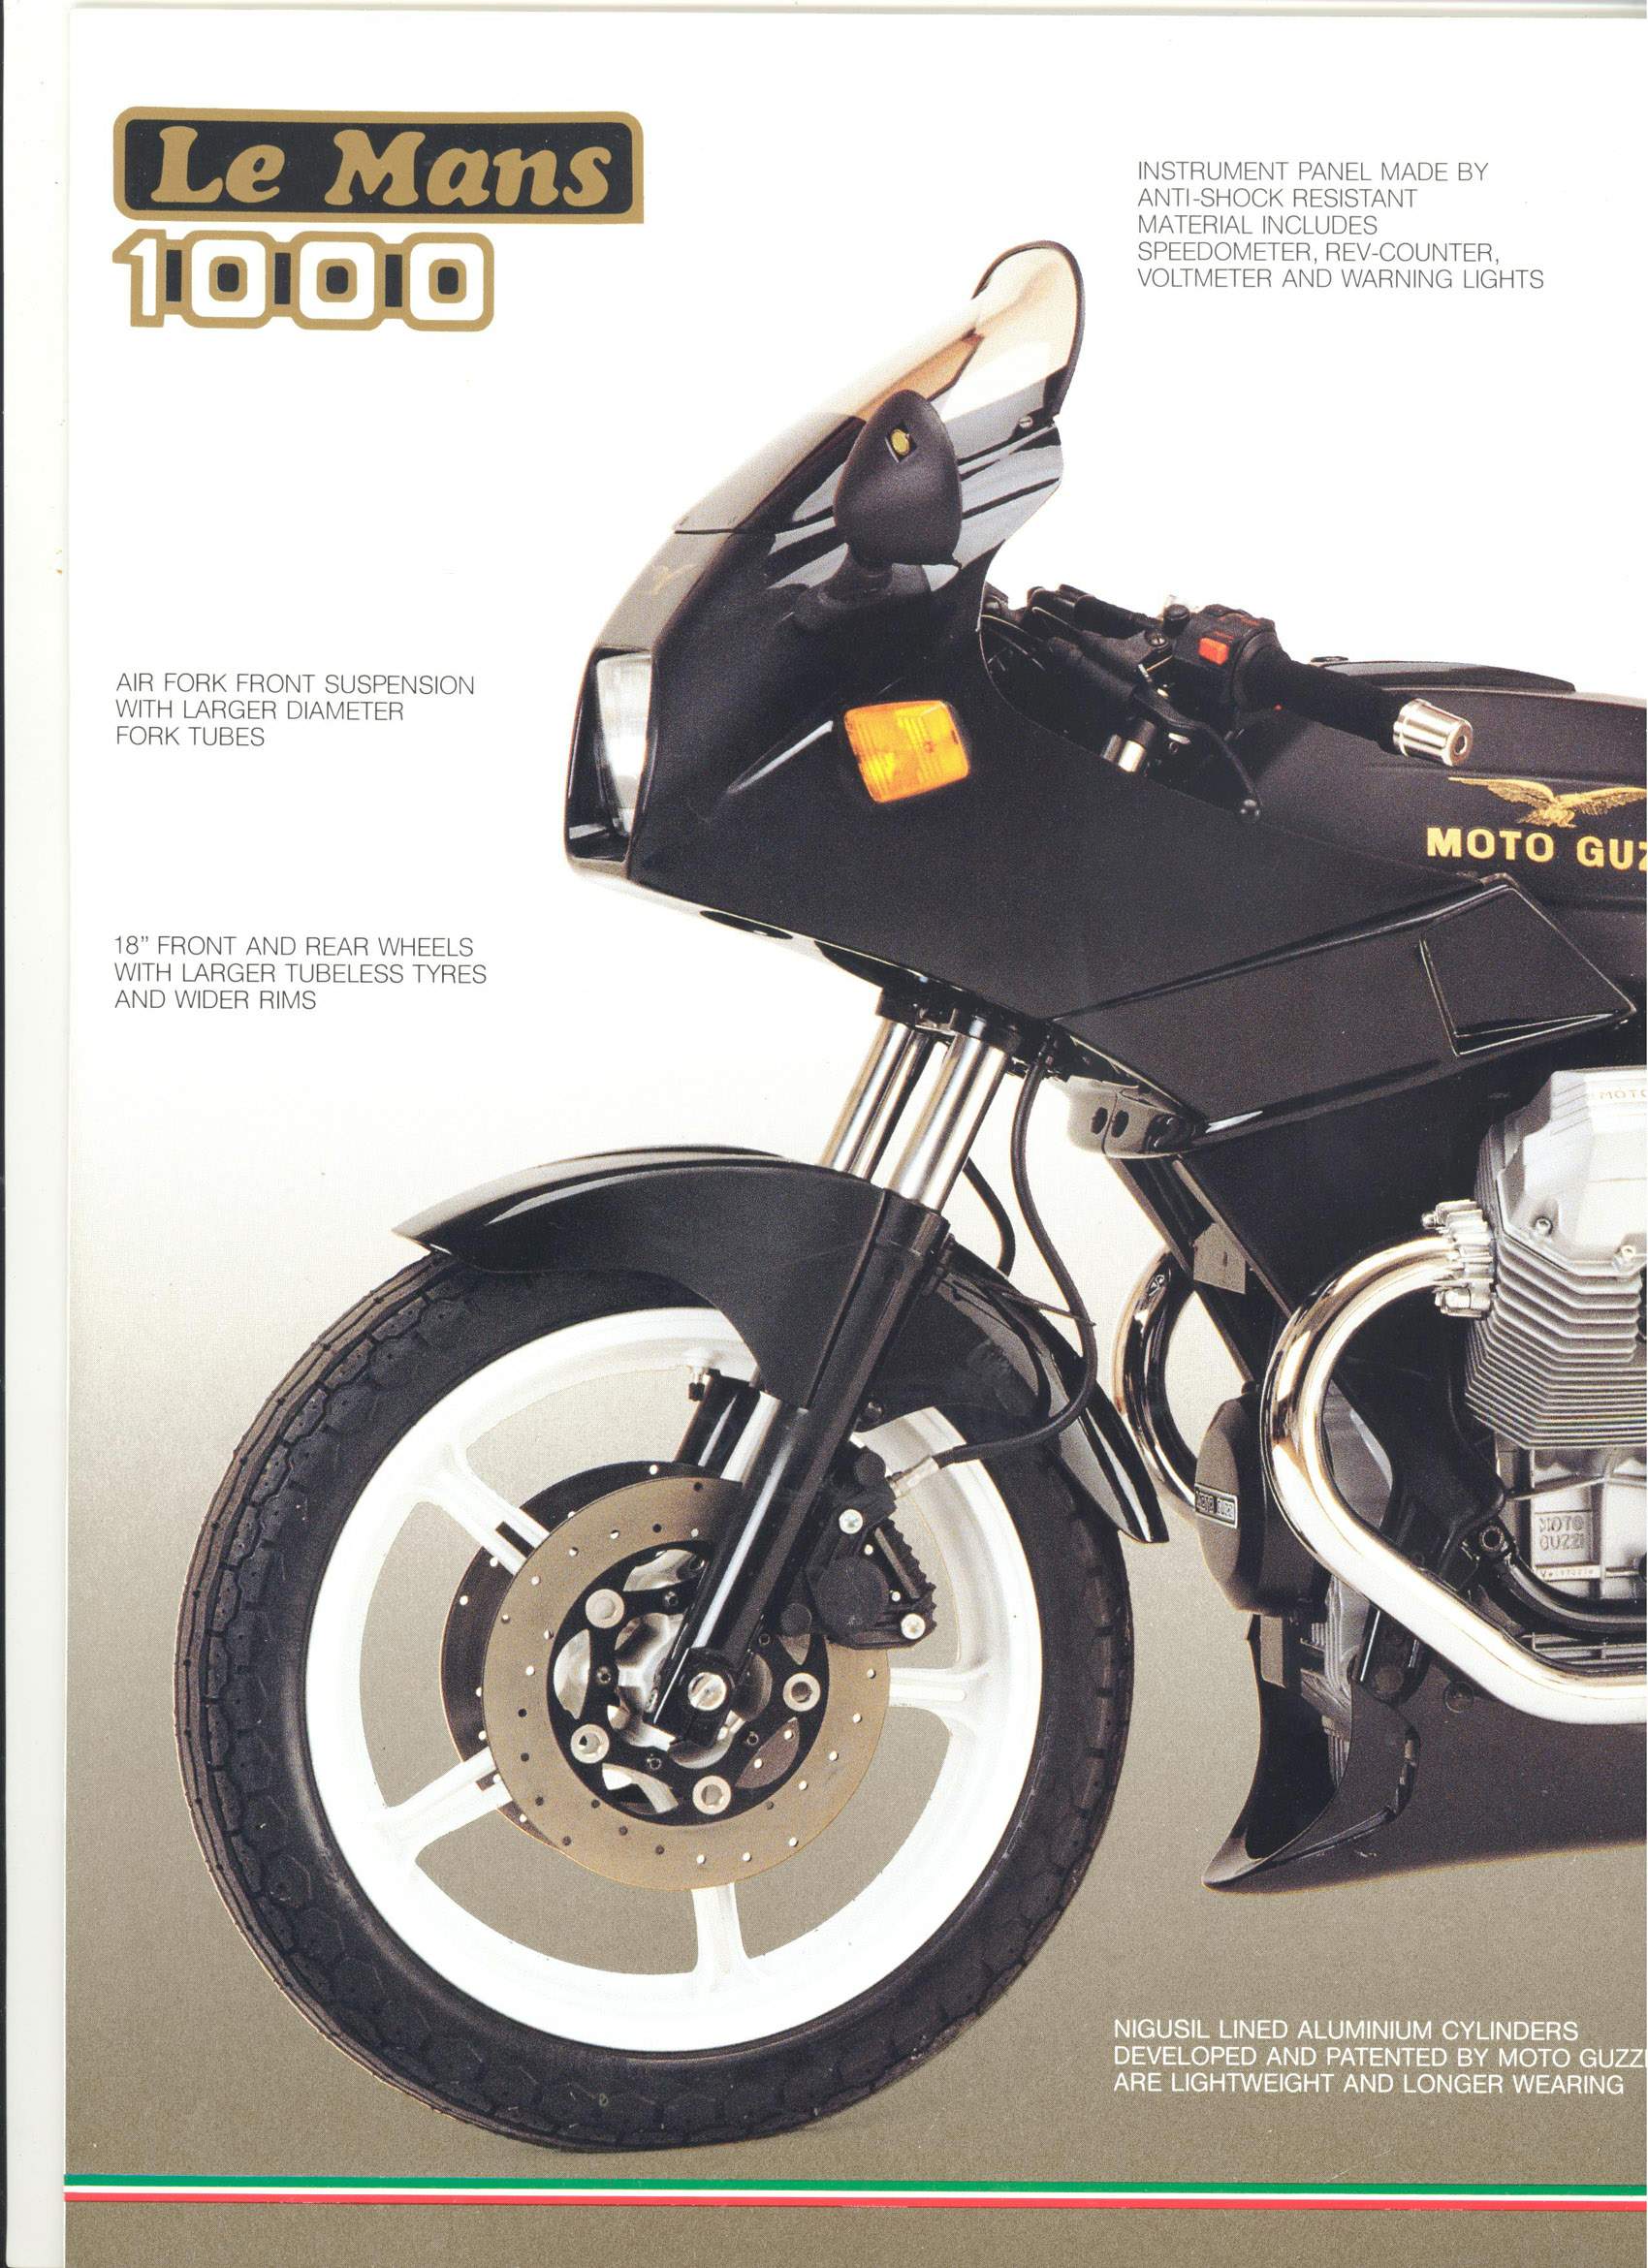 Adesivo per Moto Guzzi 1000 Le Mans kit